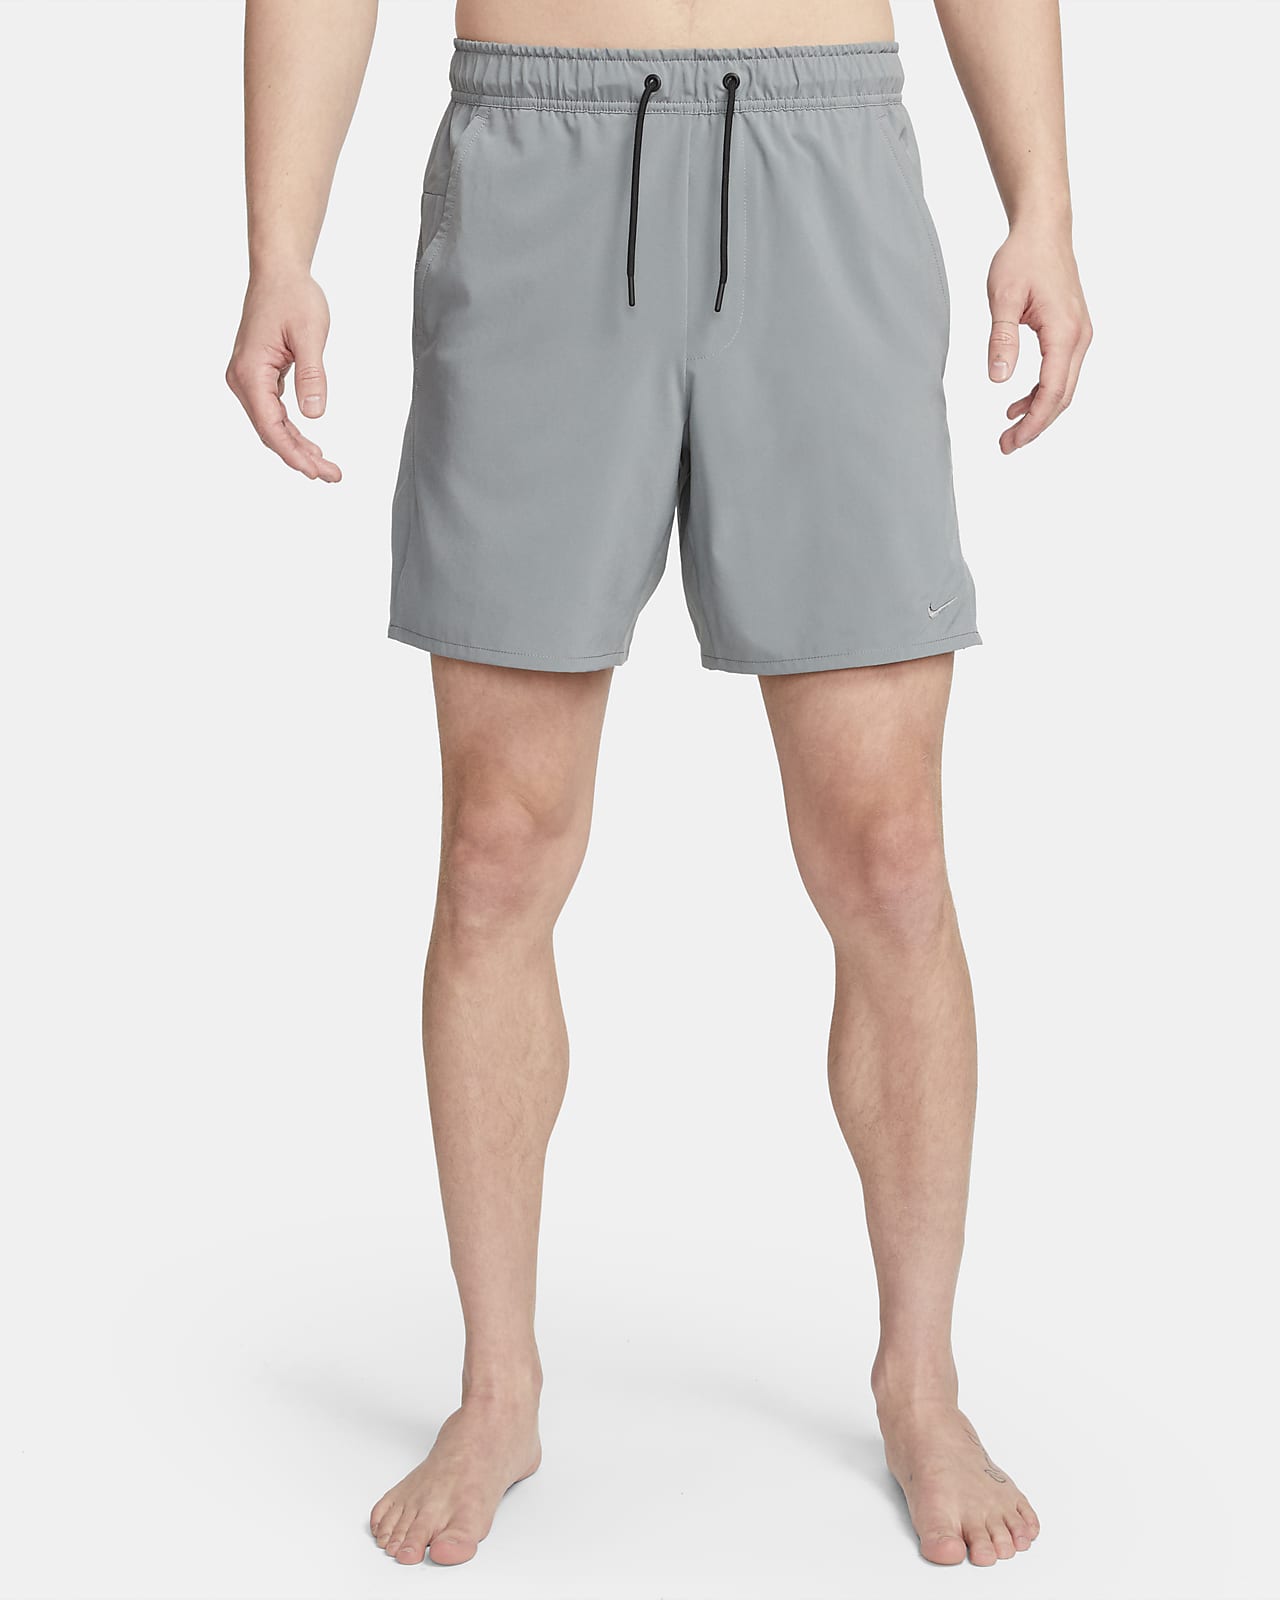 Alsidige Nike Unlimited-Dri-FIT-shorts (18 cm) uden for til mænd